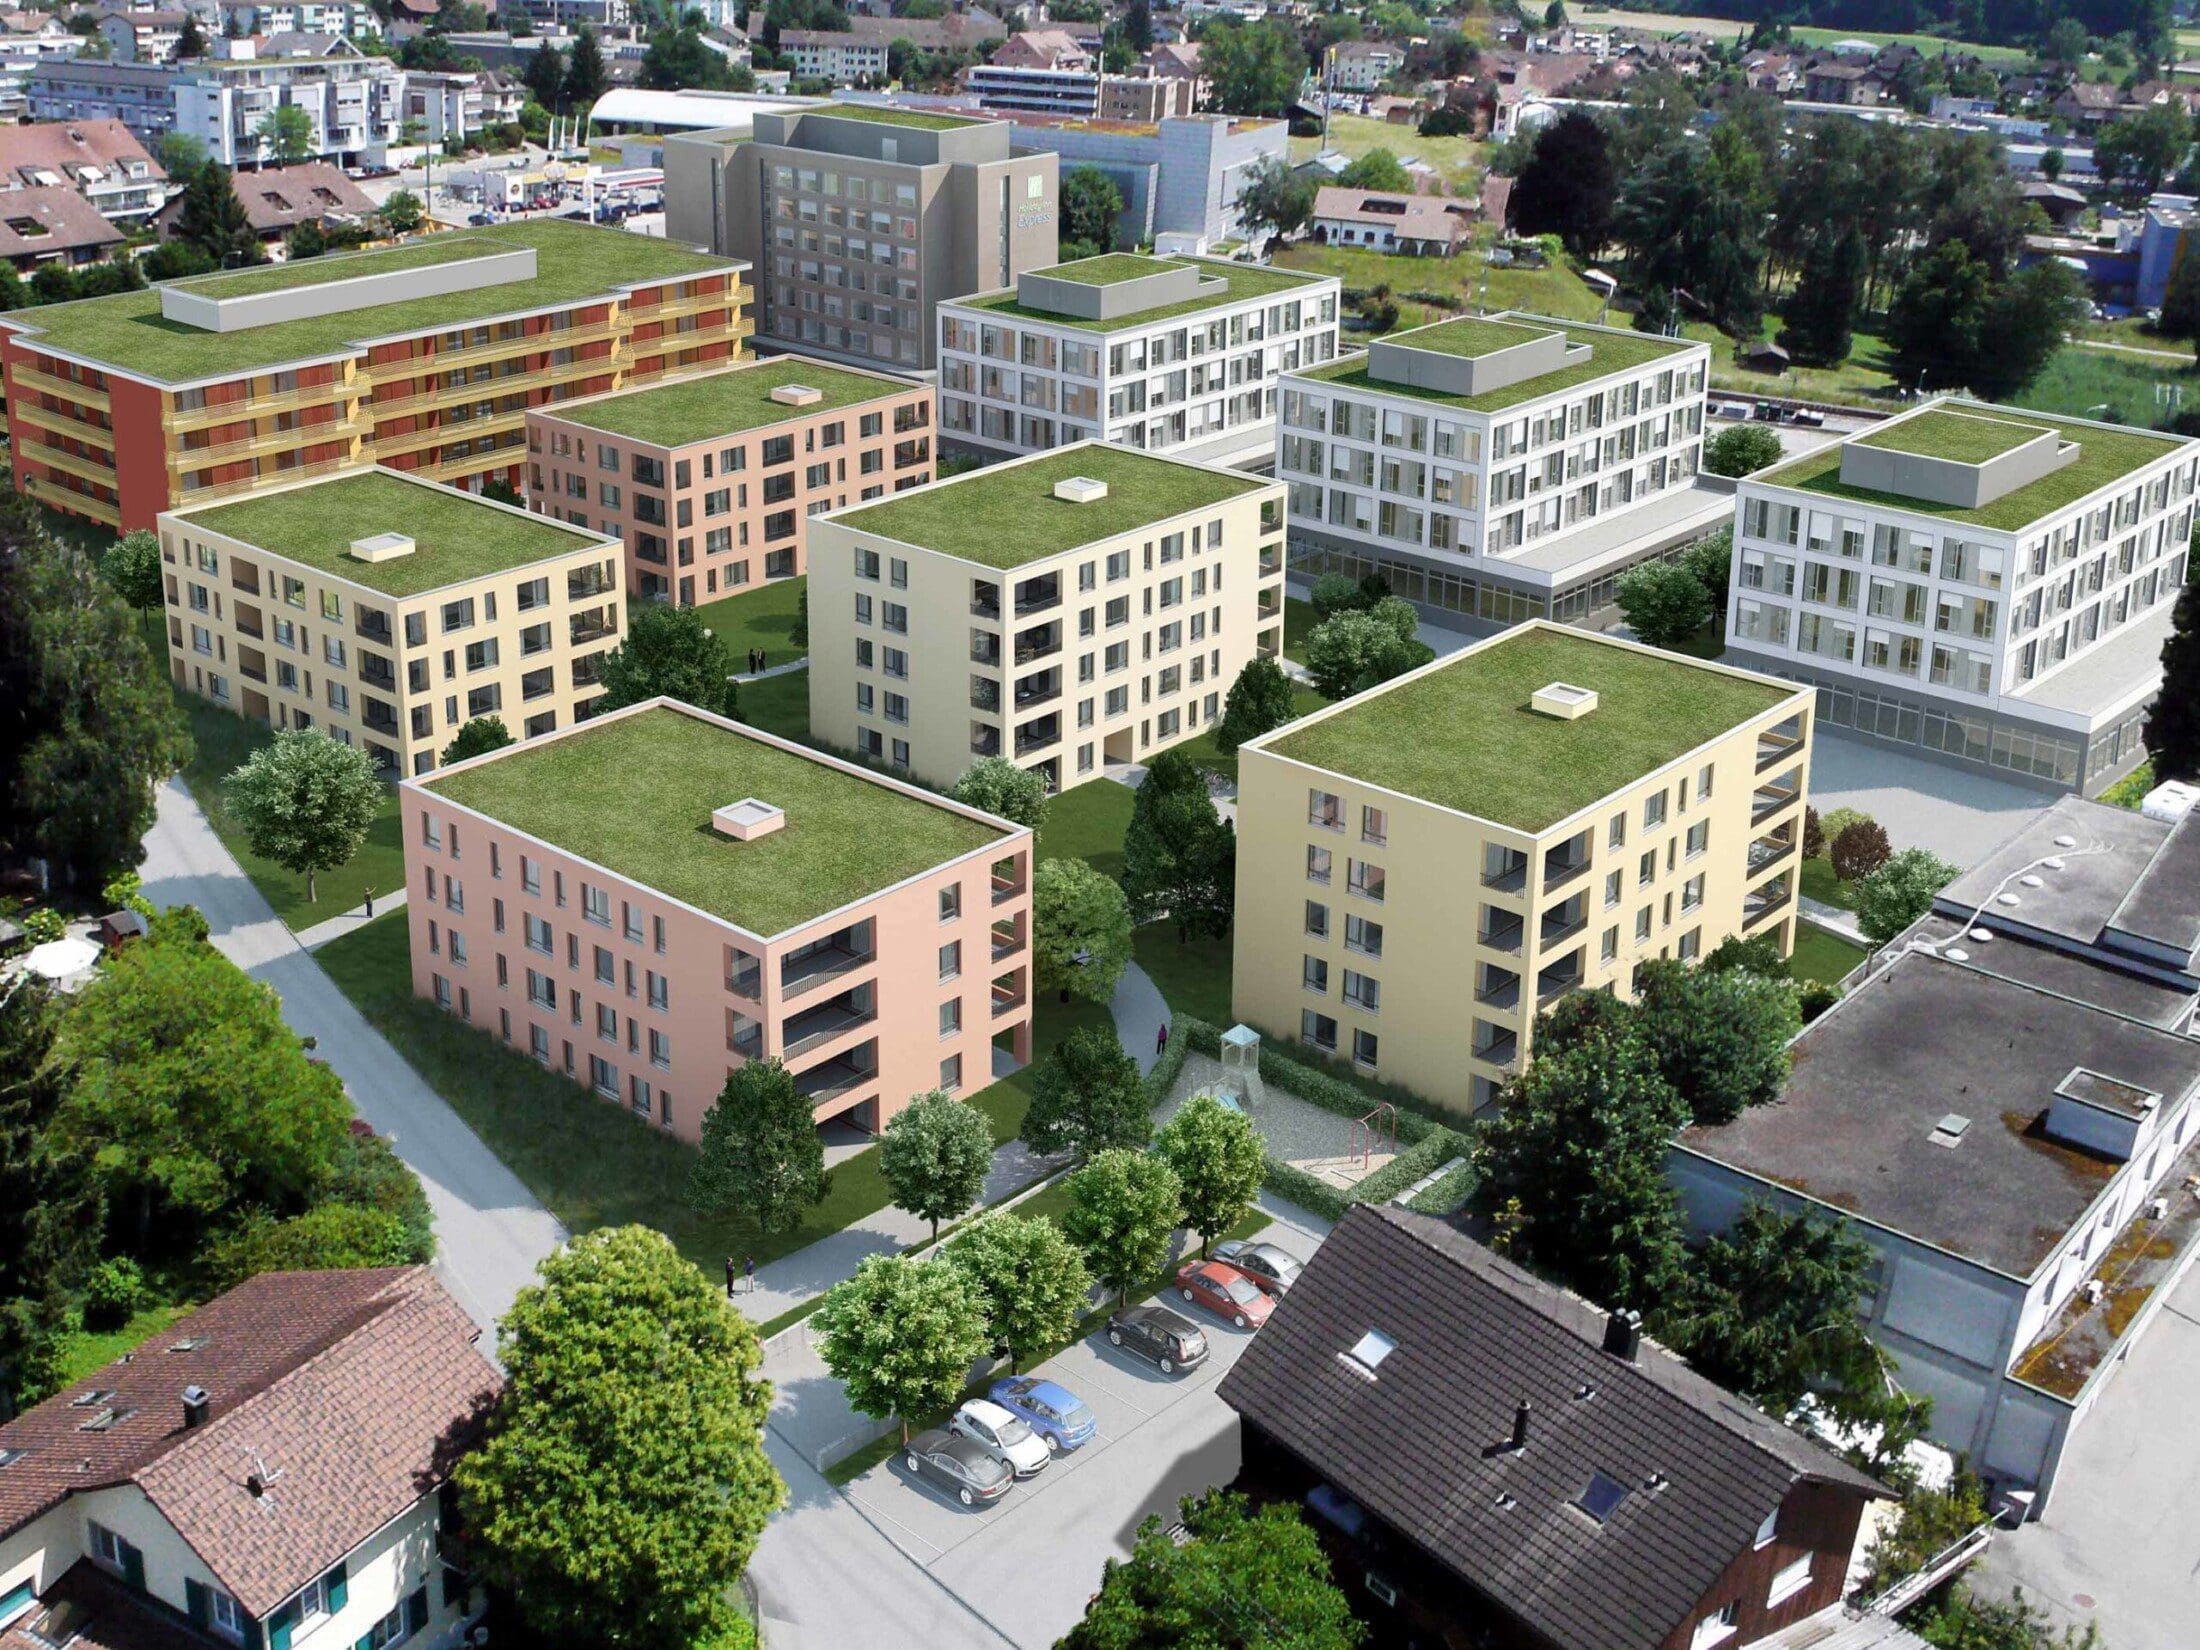 Siedlung Wohnbauten - Architektur Visualisierung Zürich